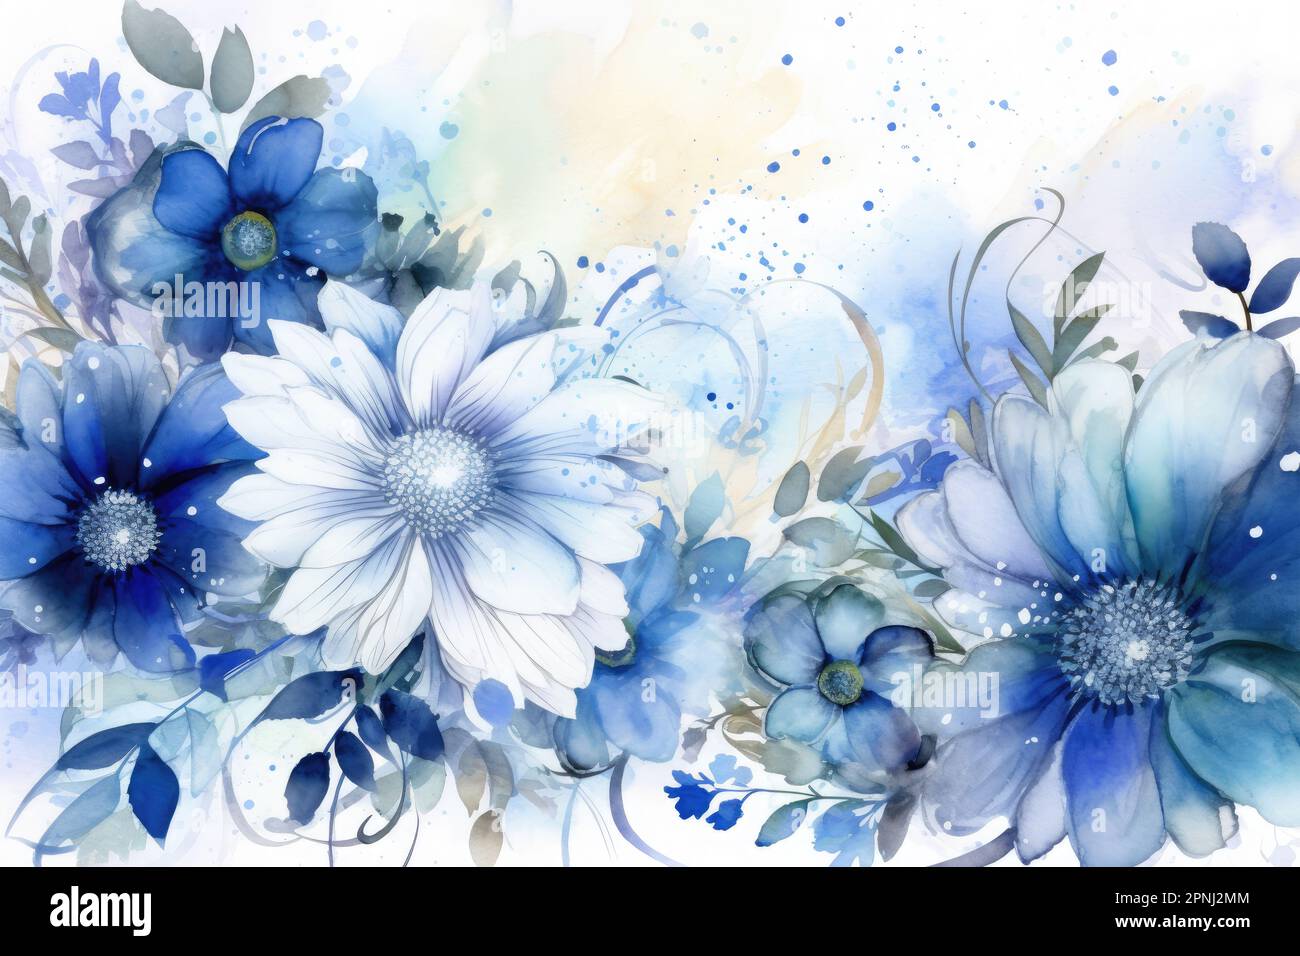 Mit Aquarellen erschaffen Sie eine farbenfrohe und lebendige Szene aus blauen Blumen mit glitzernden Akzenten und komplexen Details auf einem hochwertigen Hintergrund Stockfoto